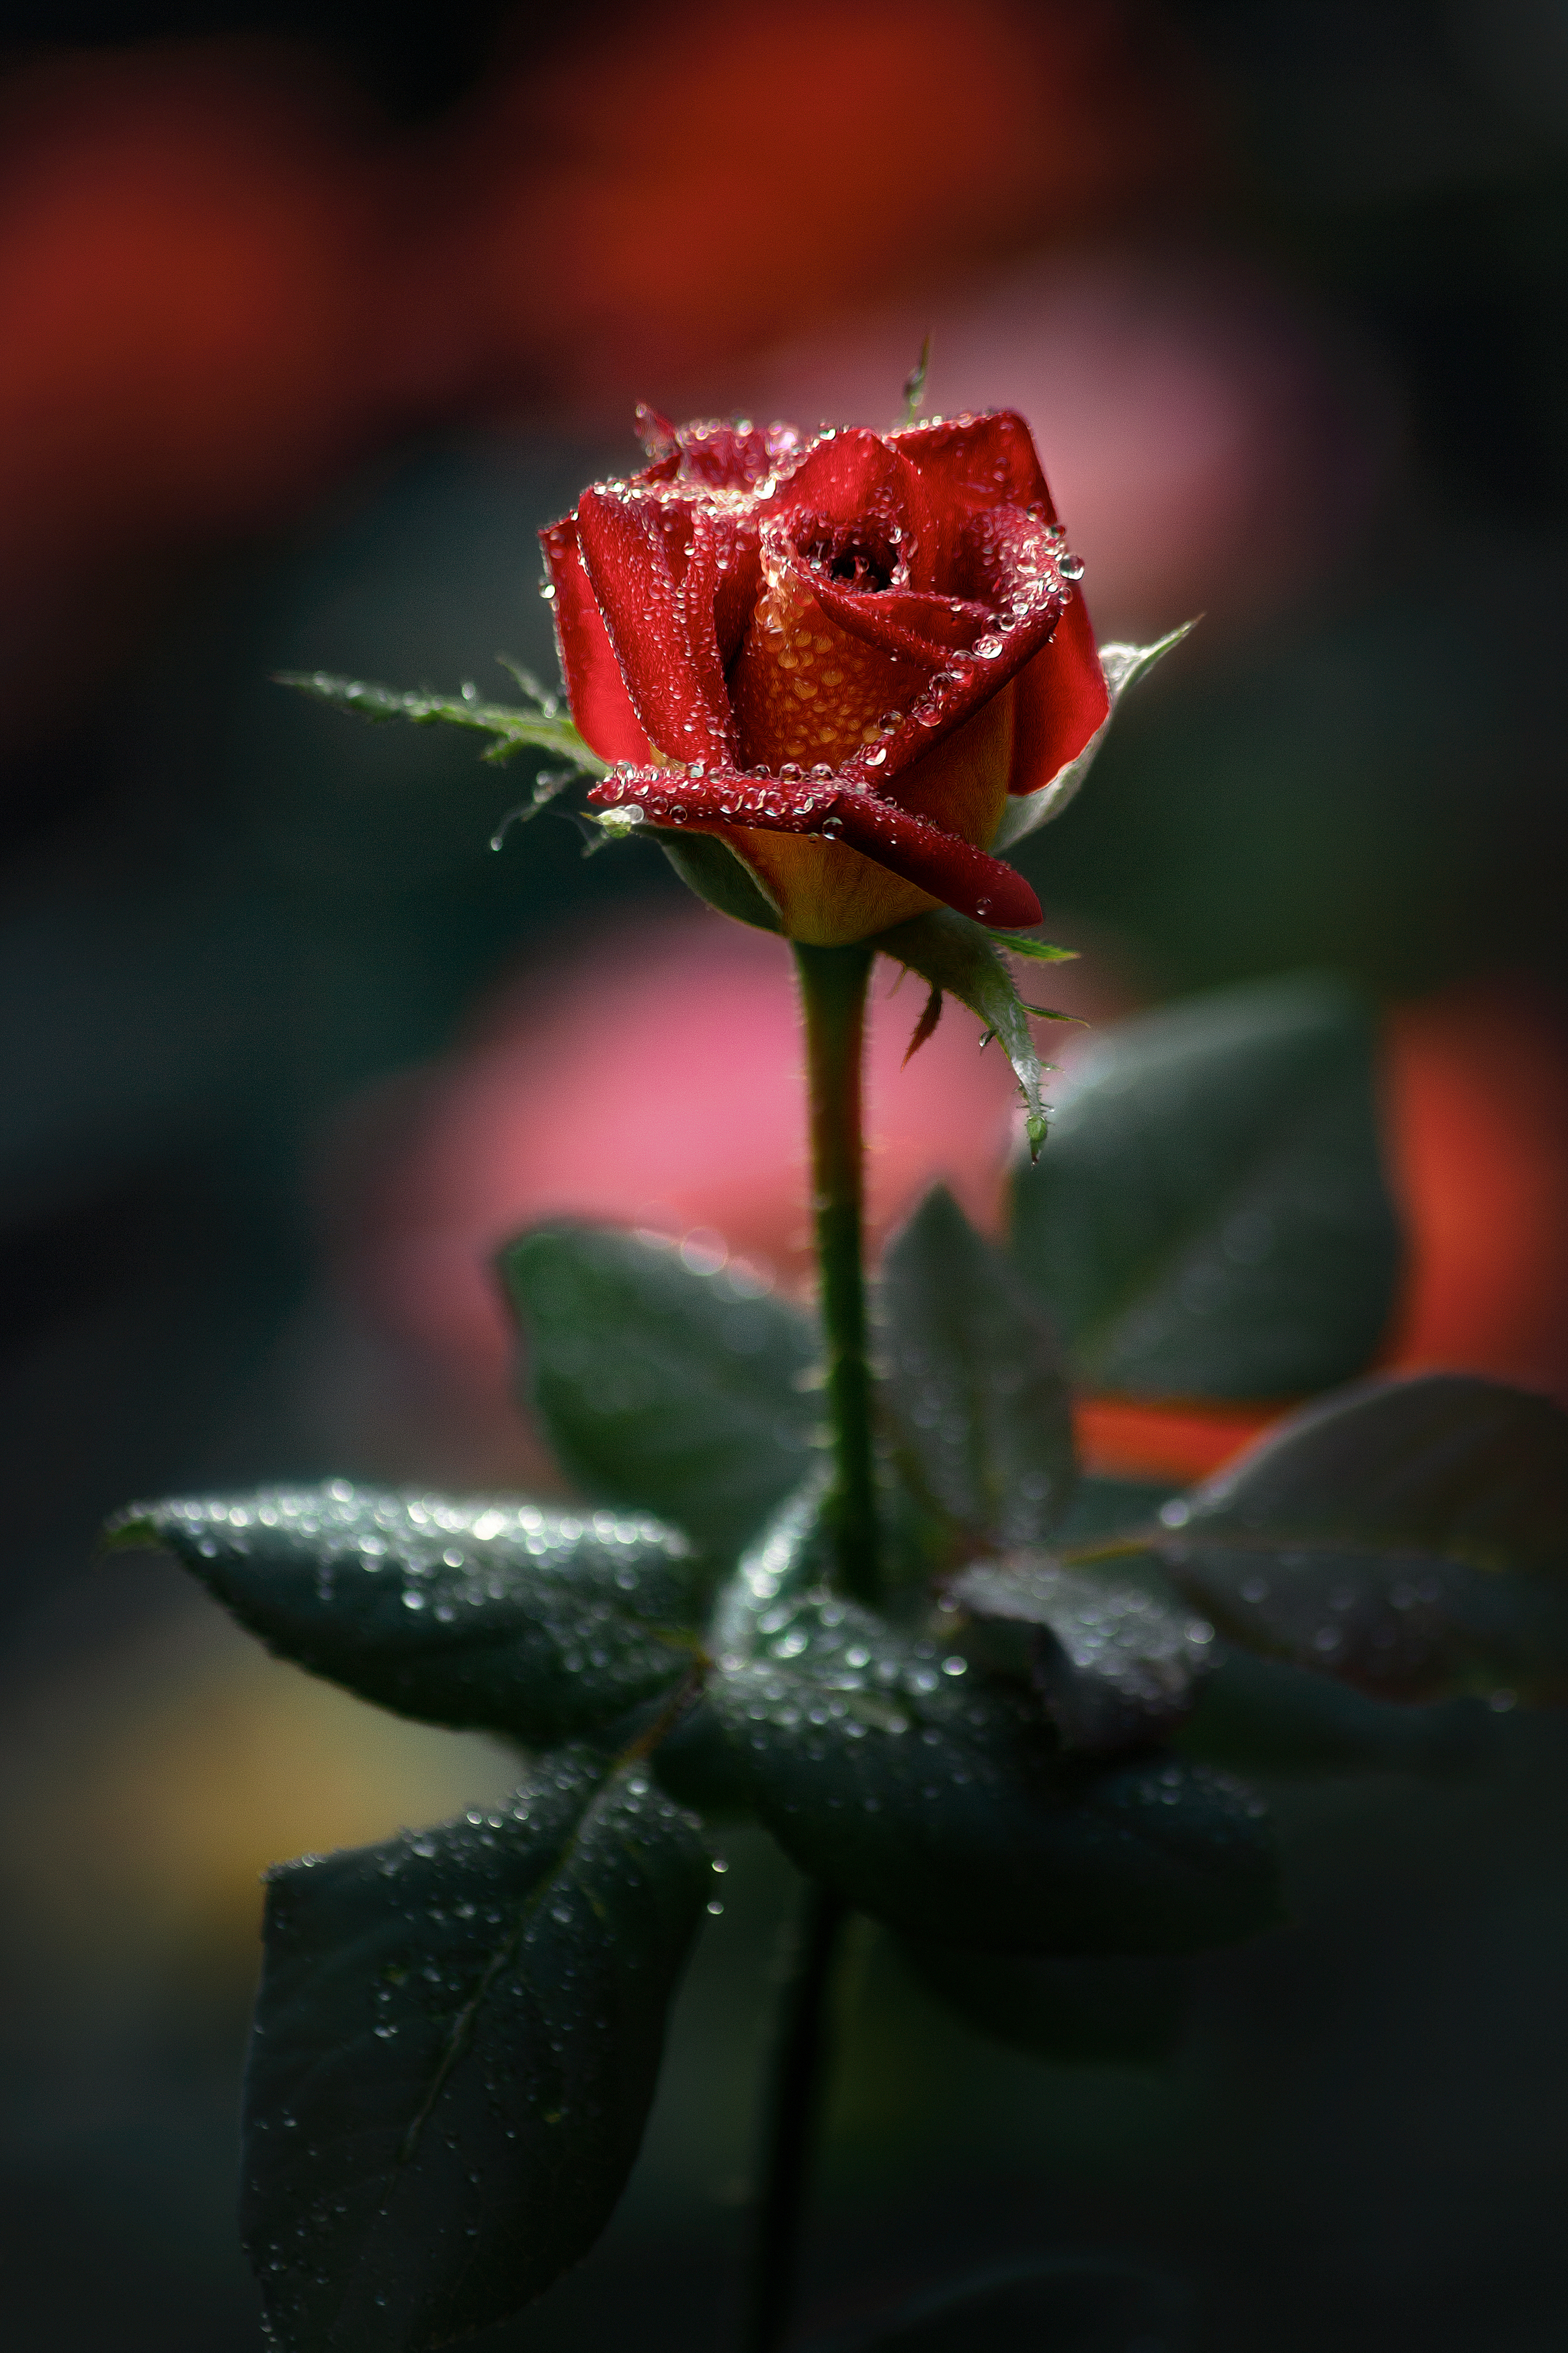 роза капли вода дождь природа фон боке сумерки свет цвет фотография лето, Еремеев Дмитрий